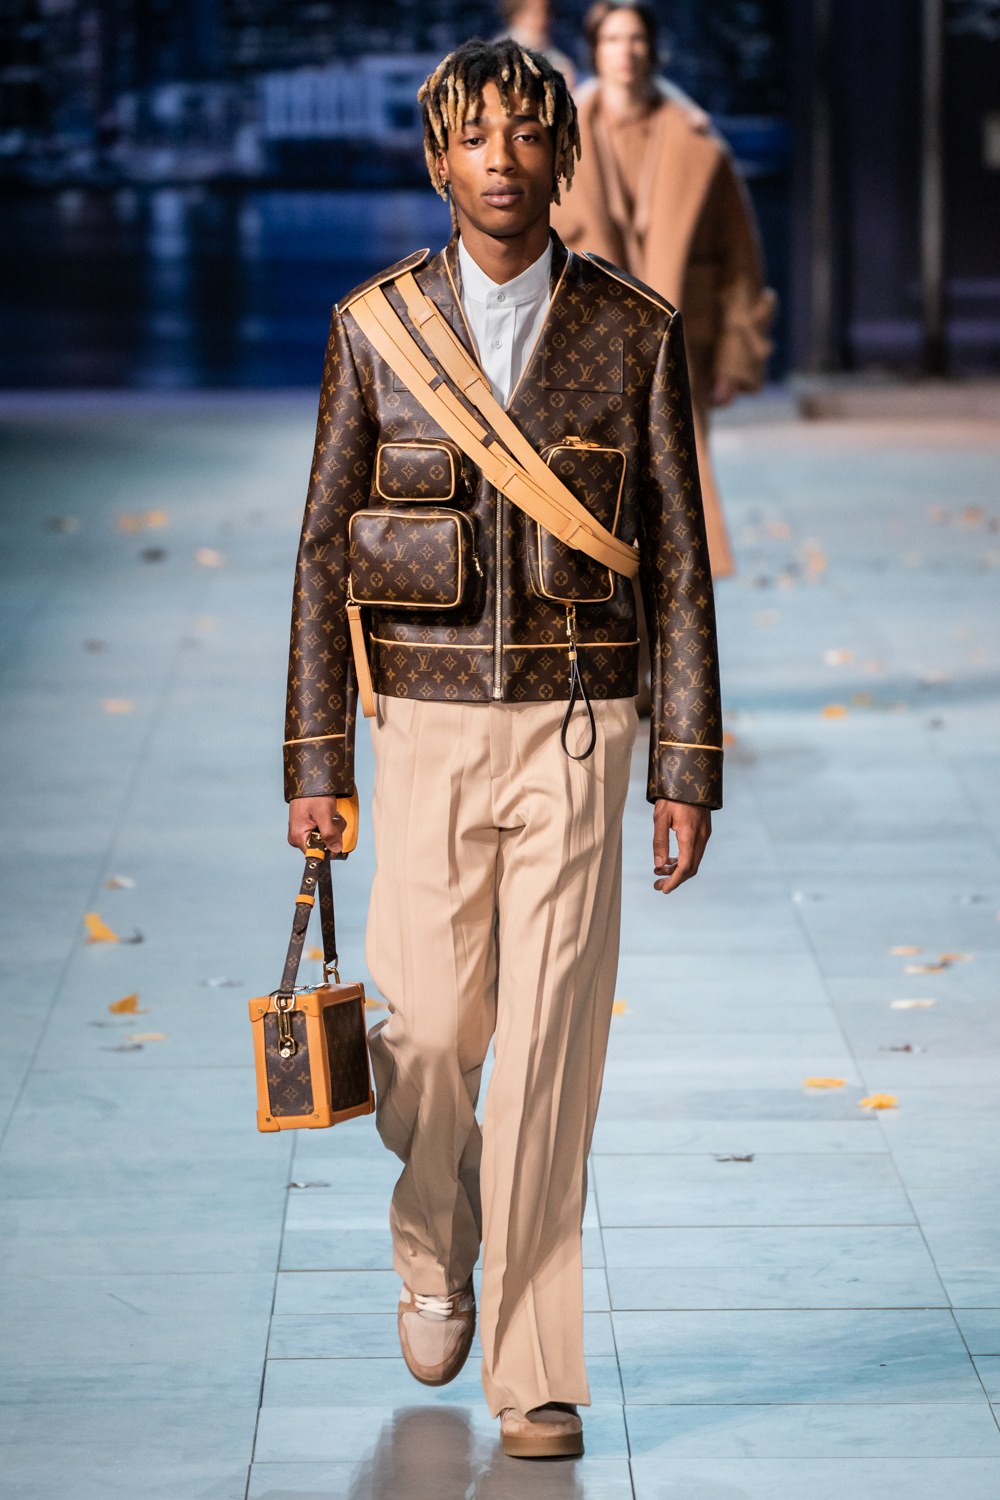 Shop Louis Vuitton Men's Down Jackets